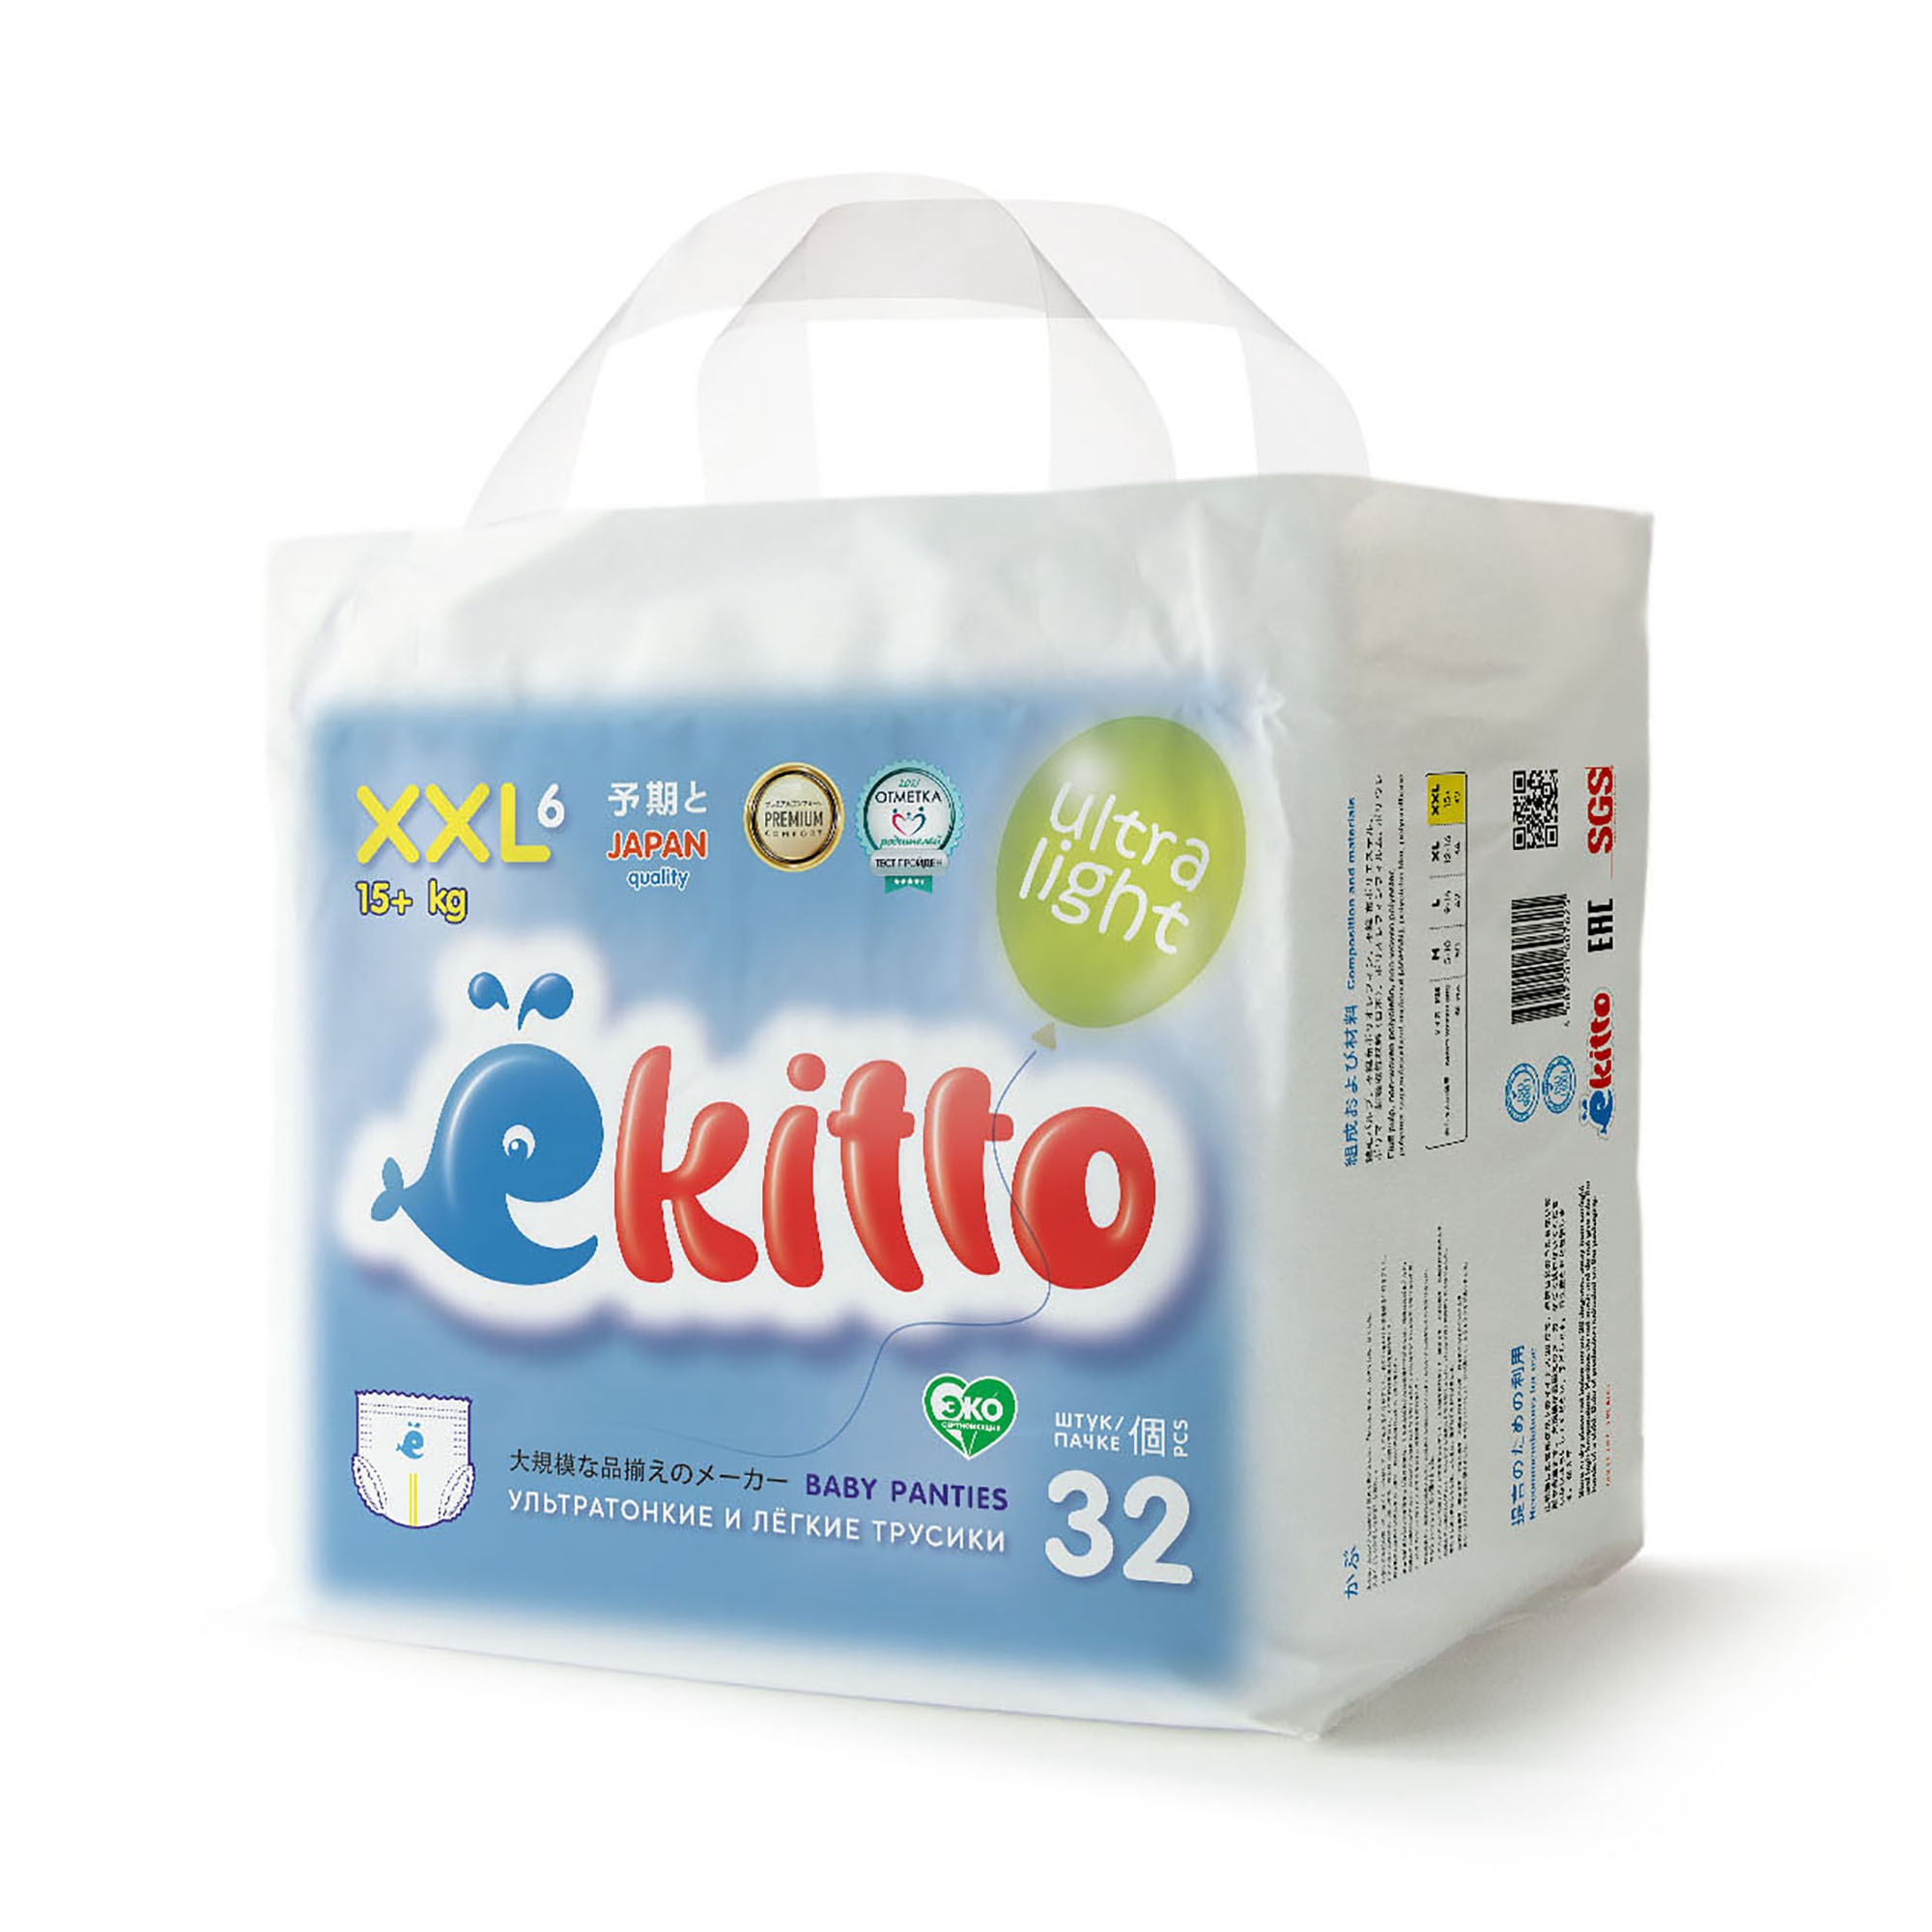 Подгузники-трусики Ekitto 6 размер XXL для новорожденных детей от 15-20 кг 32 шт - фото 10